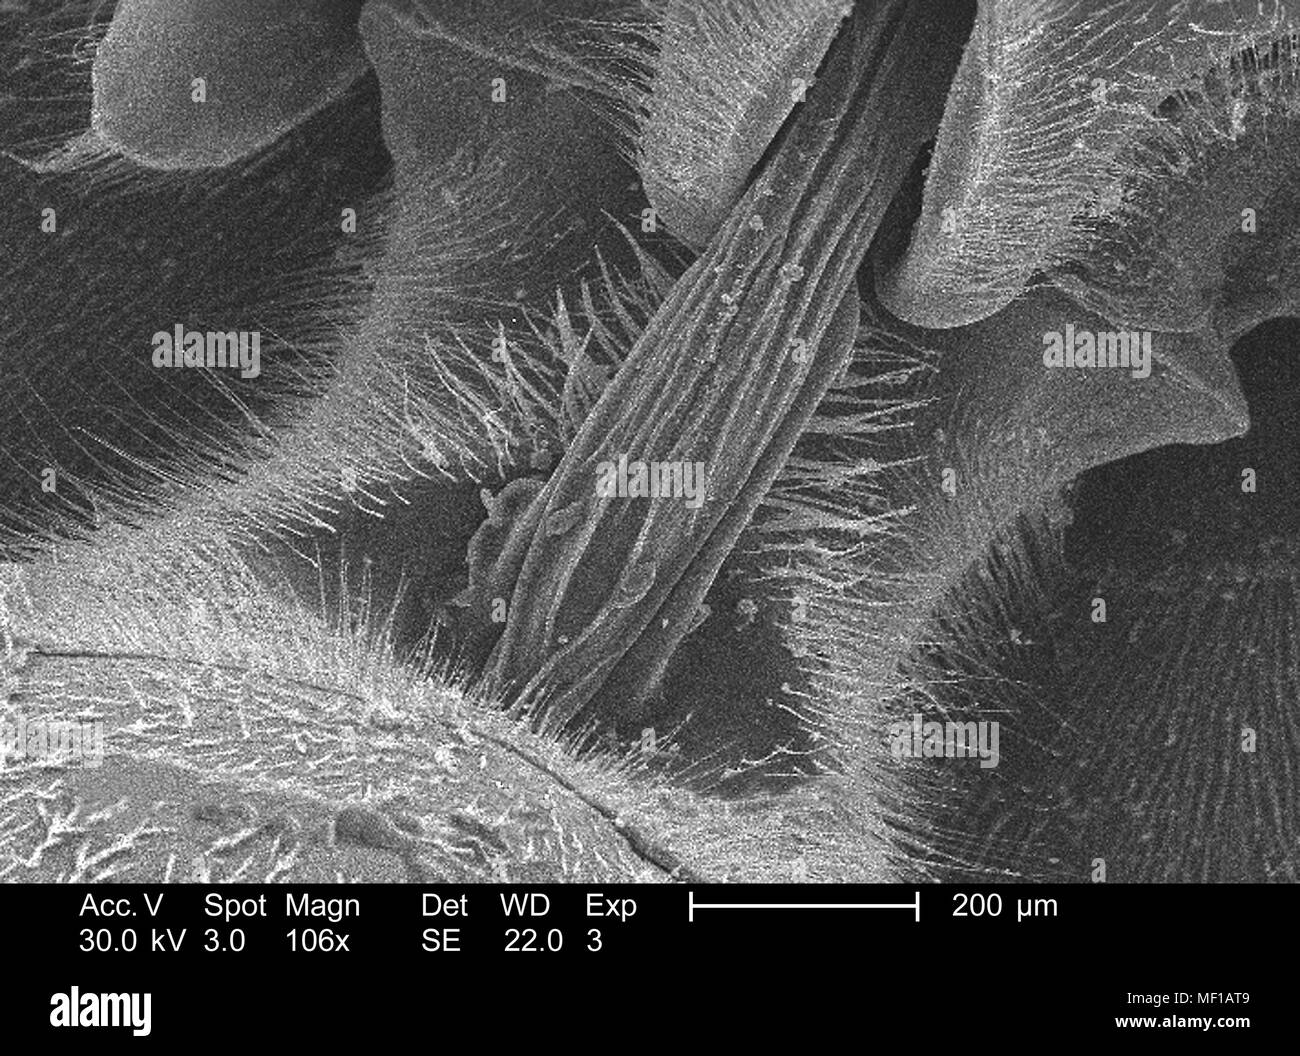 Caratteristiche morfologiche di un misterioso wasp cervice, raffigurato nella 106x di scansione ingrandita al microscopio elettronico (SEM) immagine, 2005. Immagine cortesia di centri per il controllo delle malattie (CDC) / Janice Haney Carr. () Foto Stock